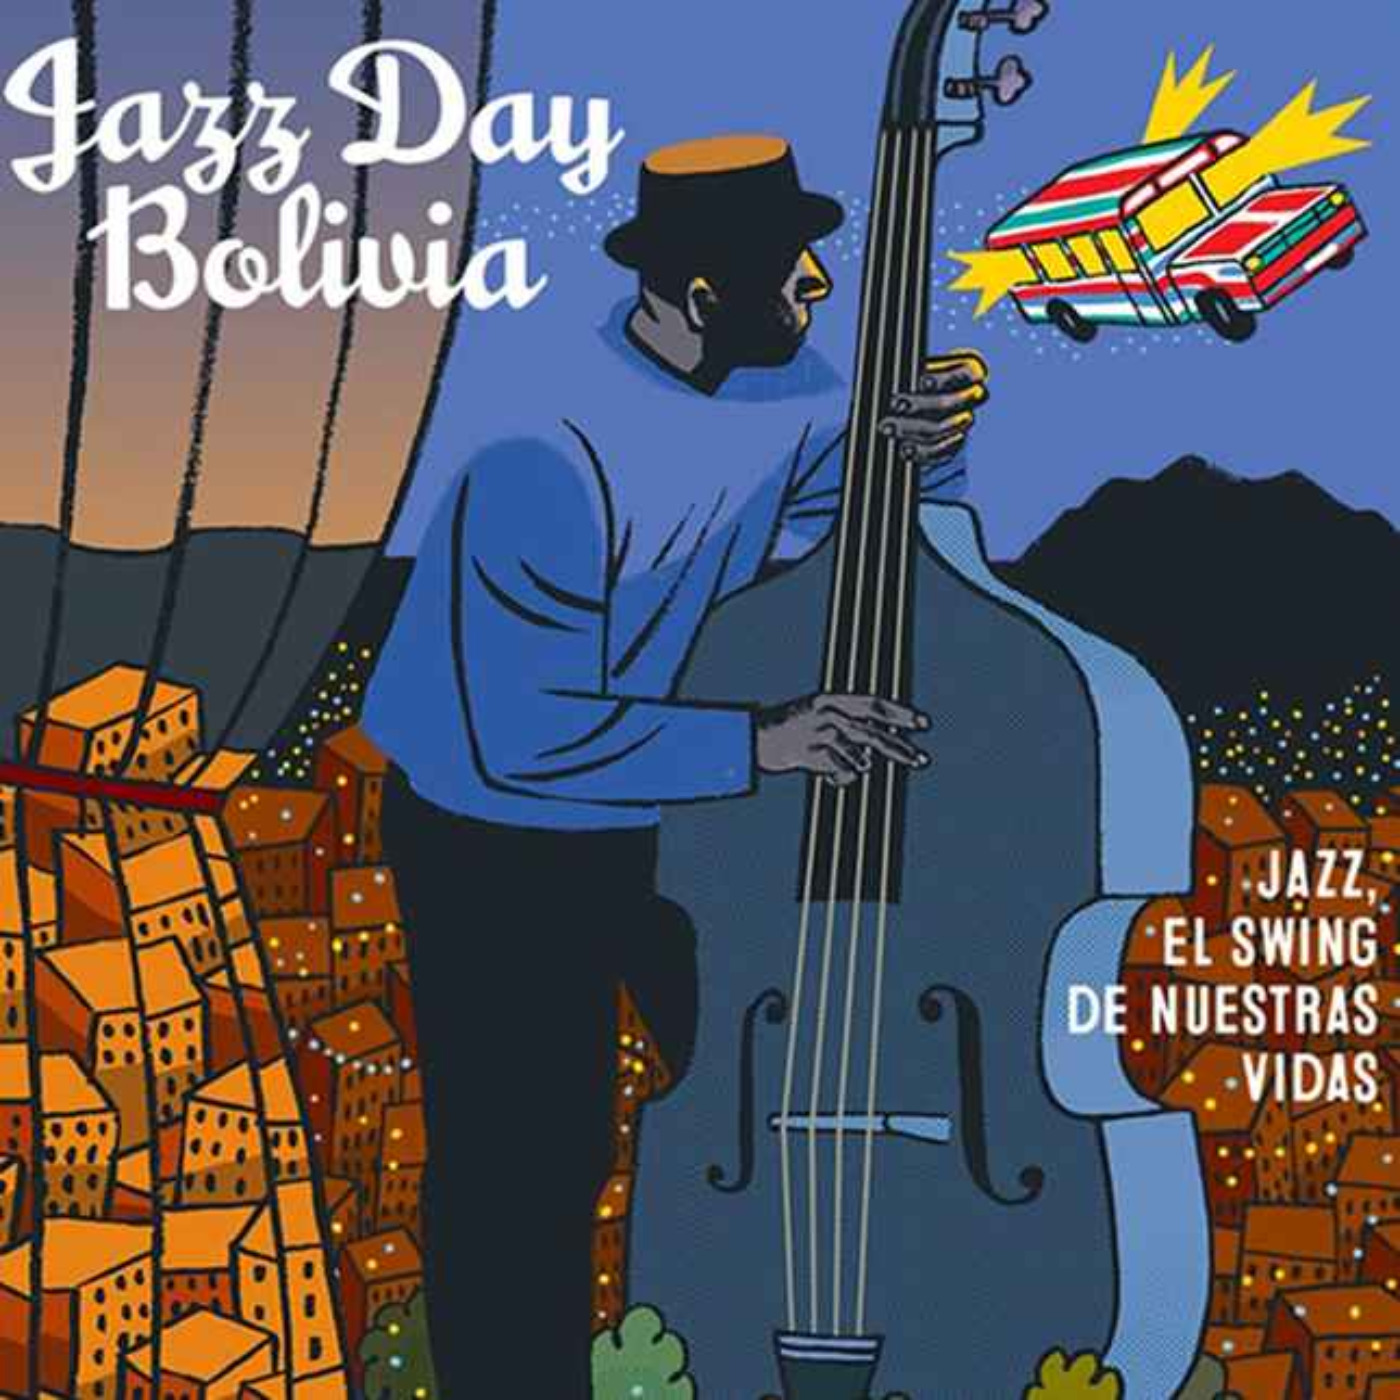 cover art for JAZZ DAY VUELVE A LAS CALLES, Iris Tito, Juan Carlos Carrasco y otros en Radio París La Paz